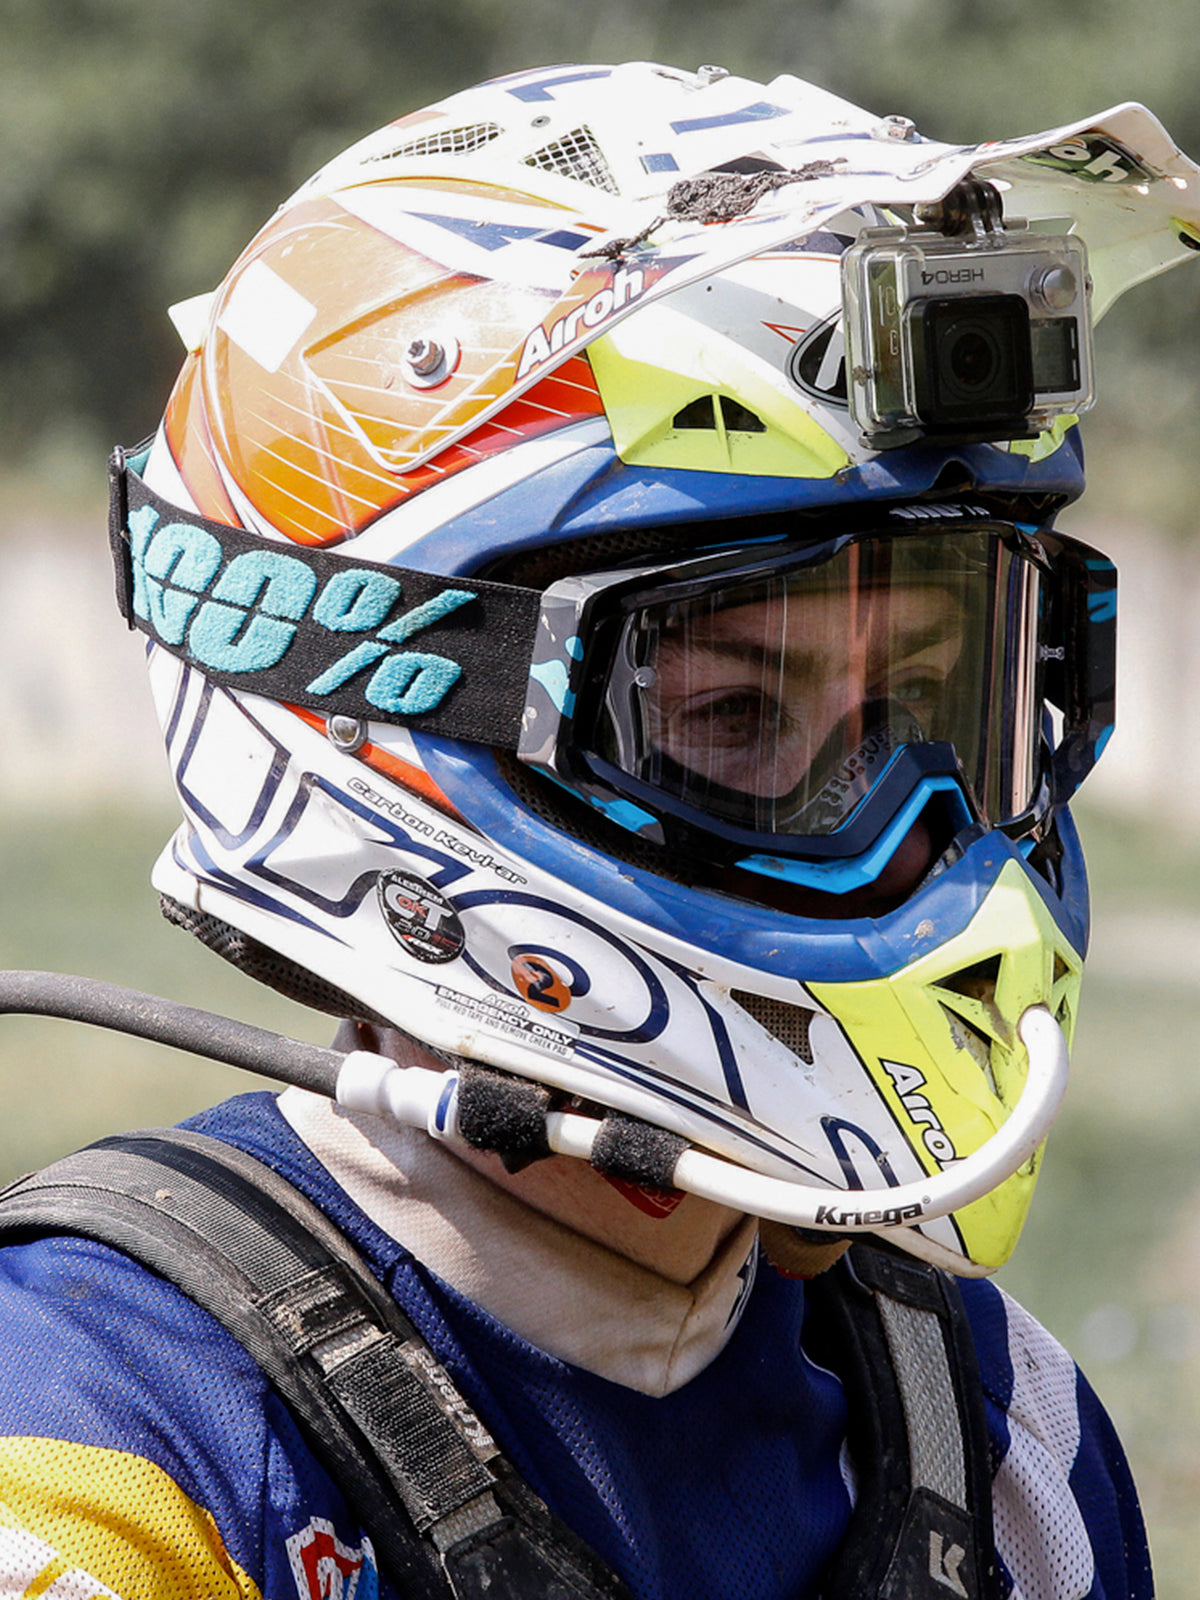 Kriega Hands-free Kit on helmet